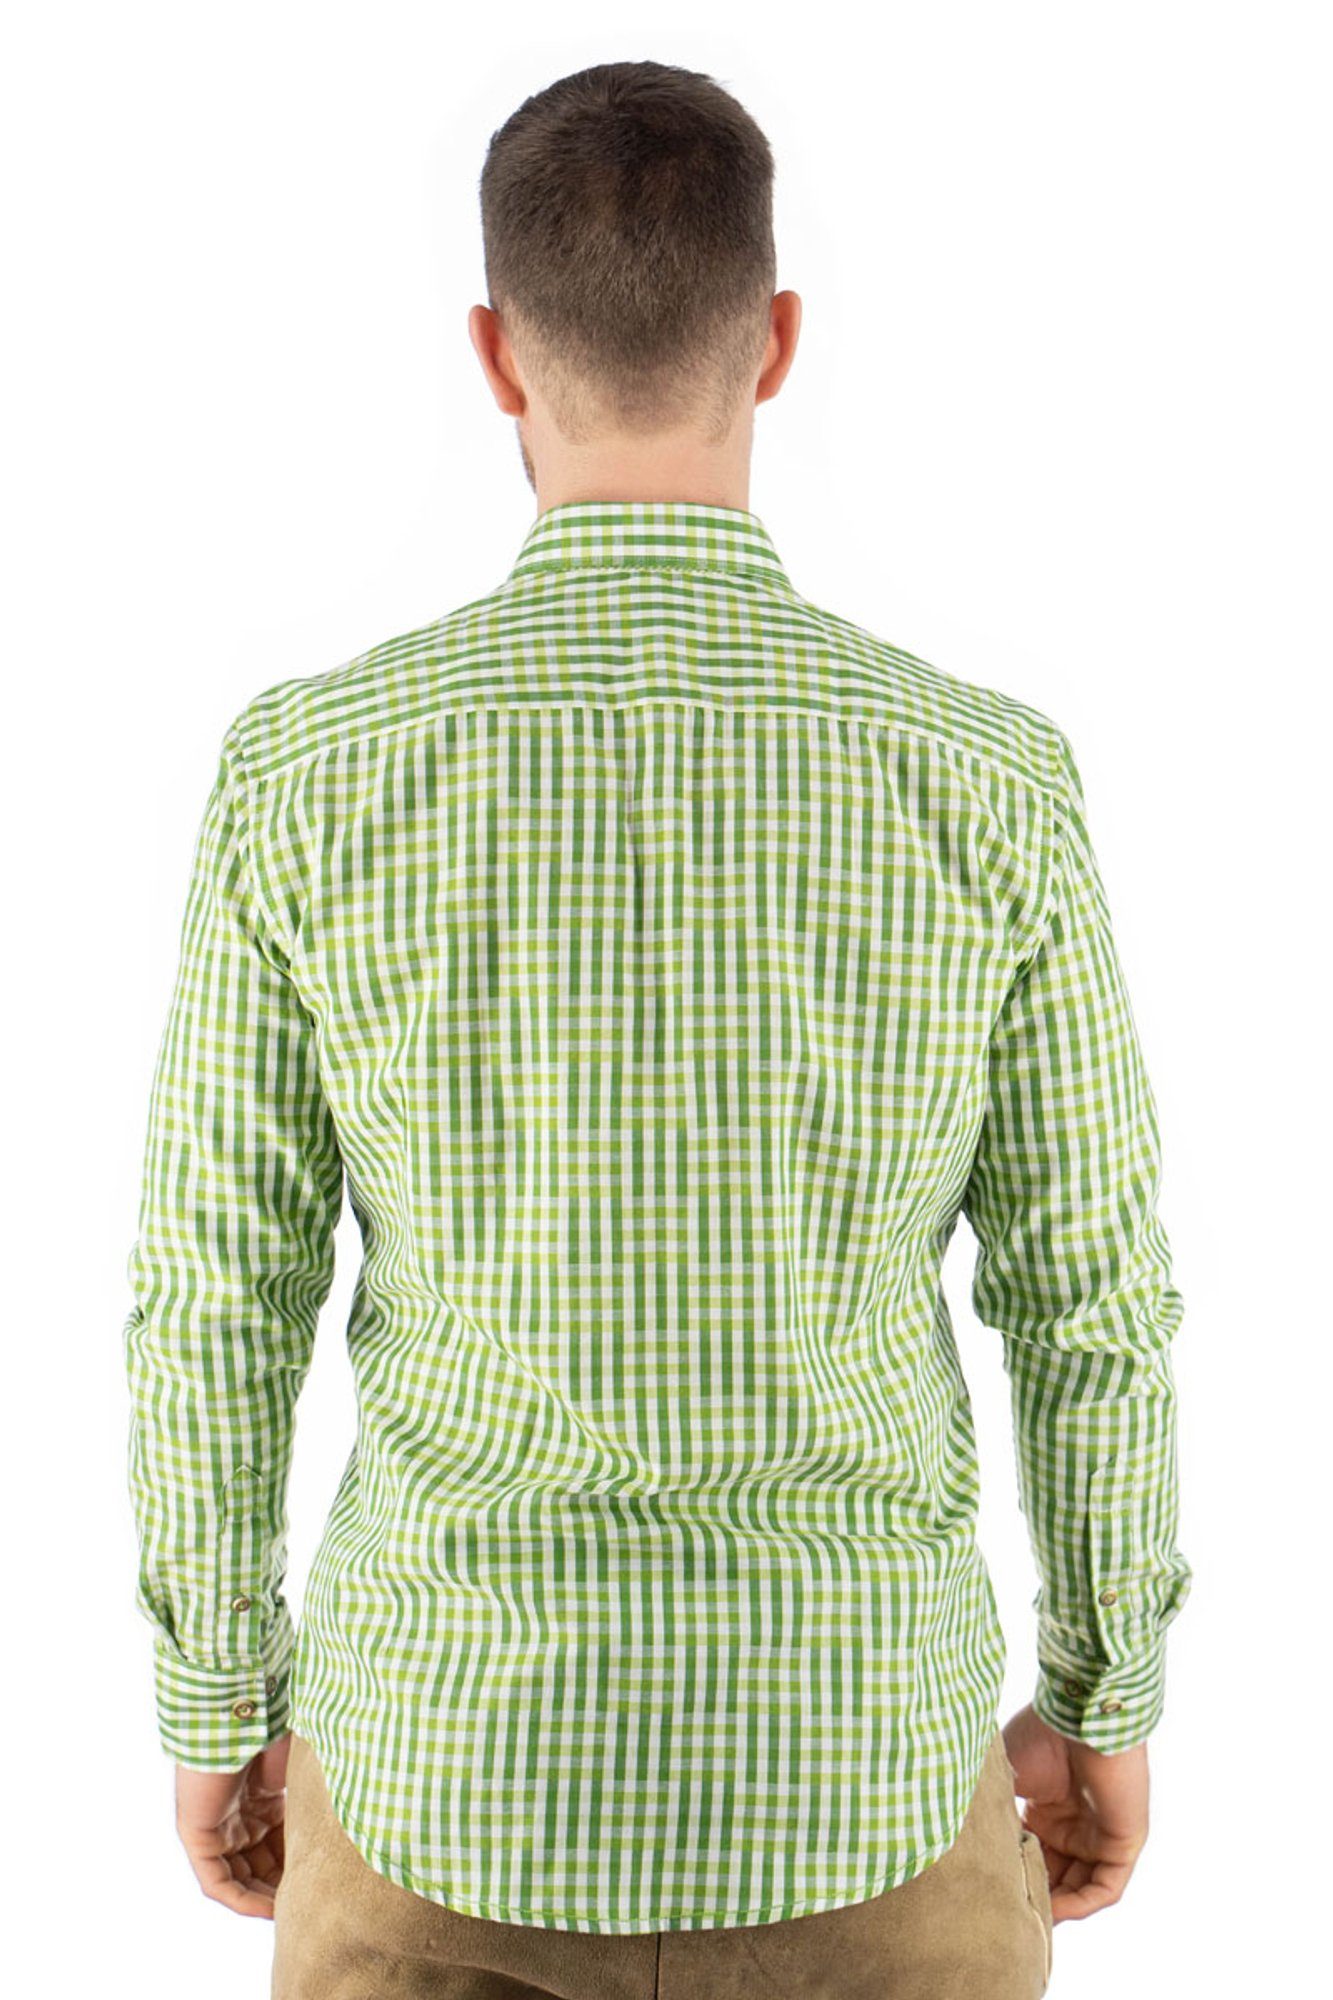 mit OS-Trachten giftgrün Trachtenhemd Haifischkragen Zufir Langarmhemd